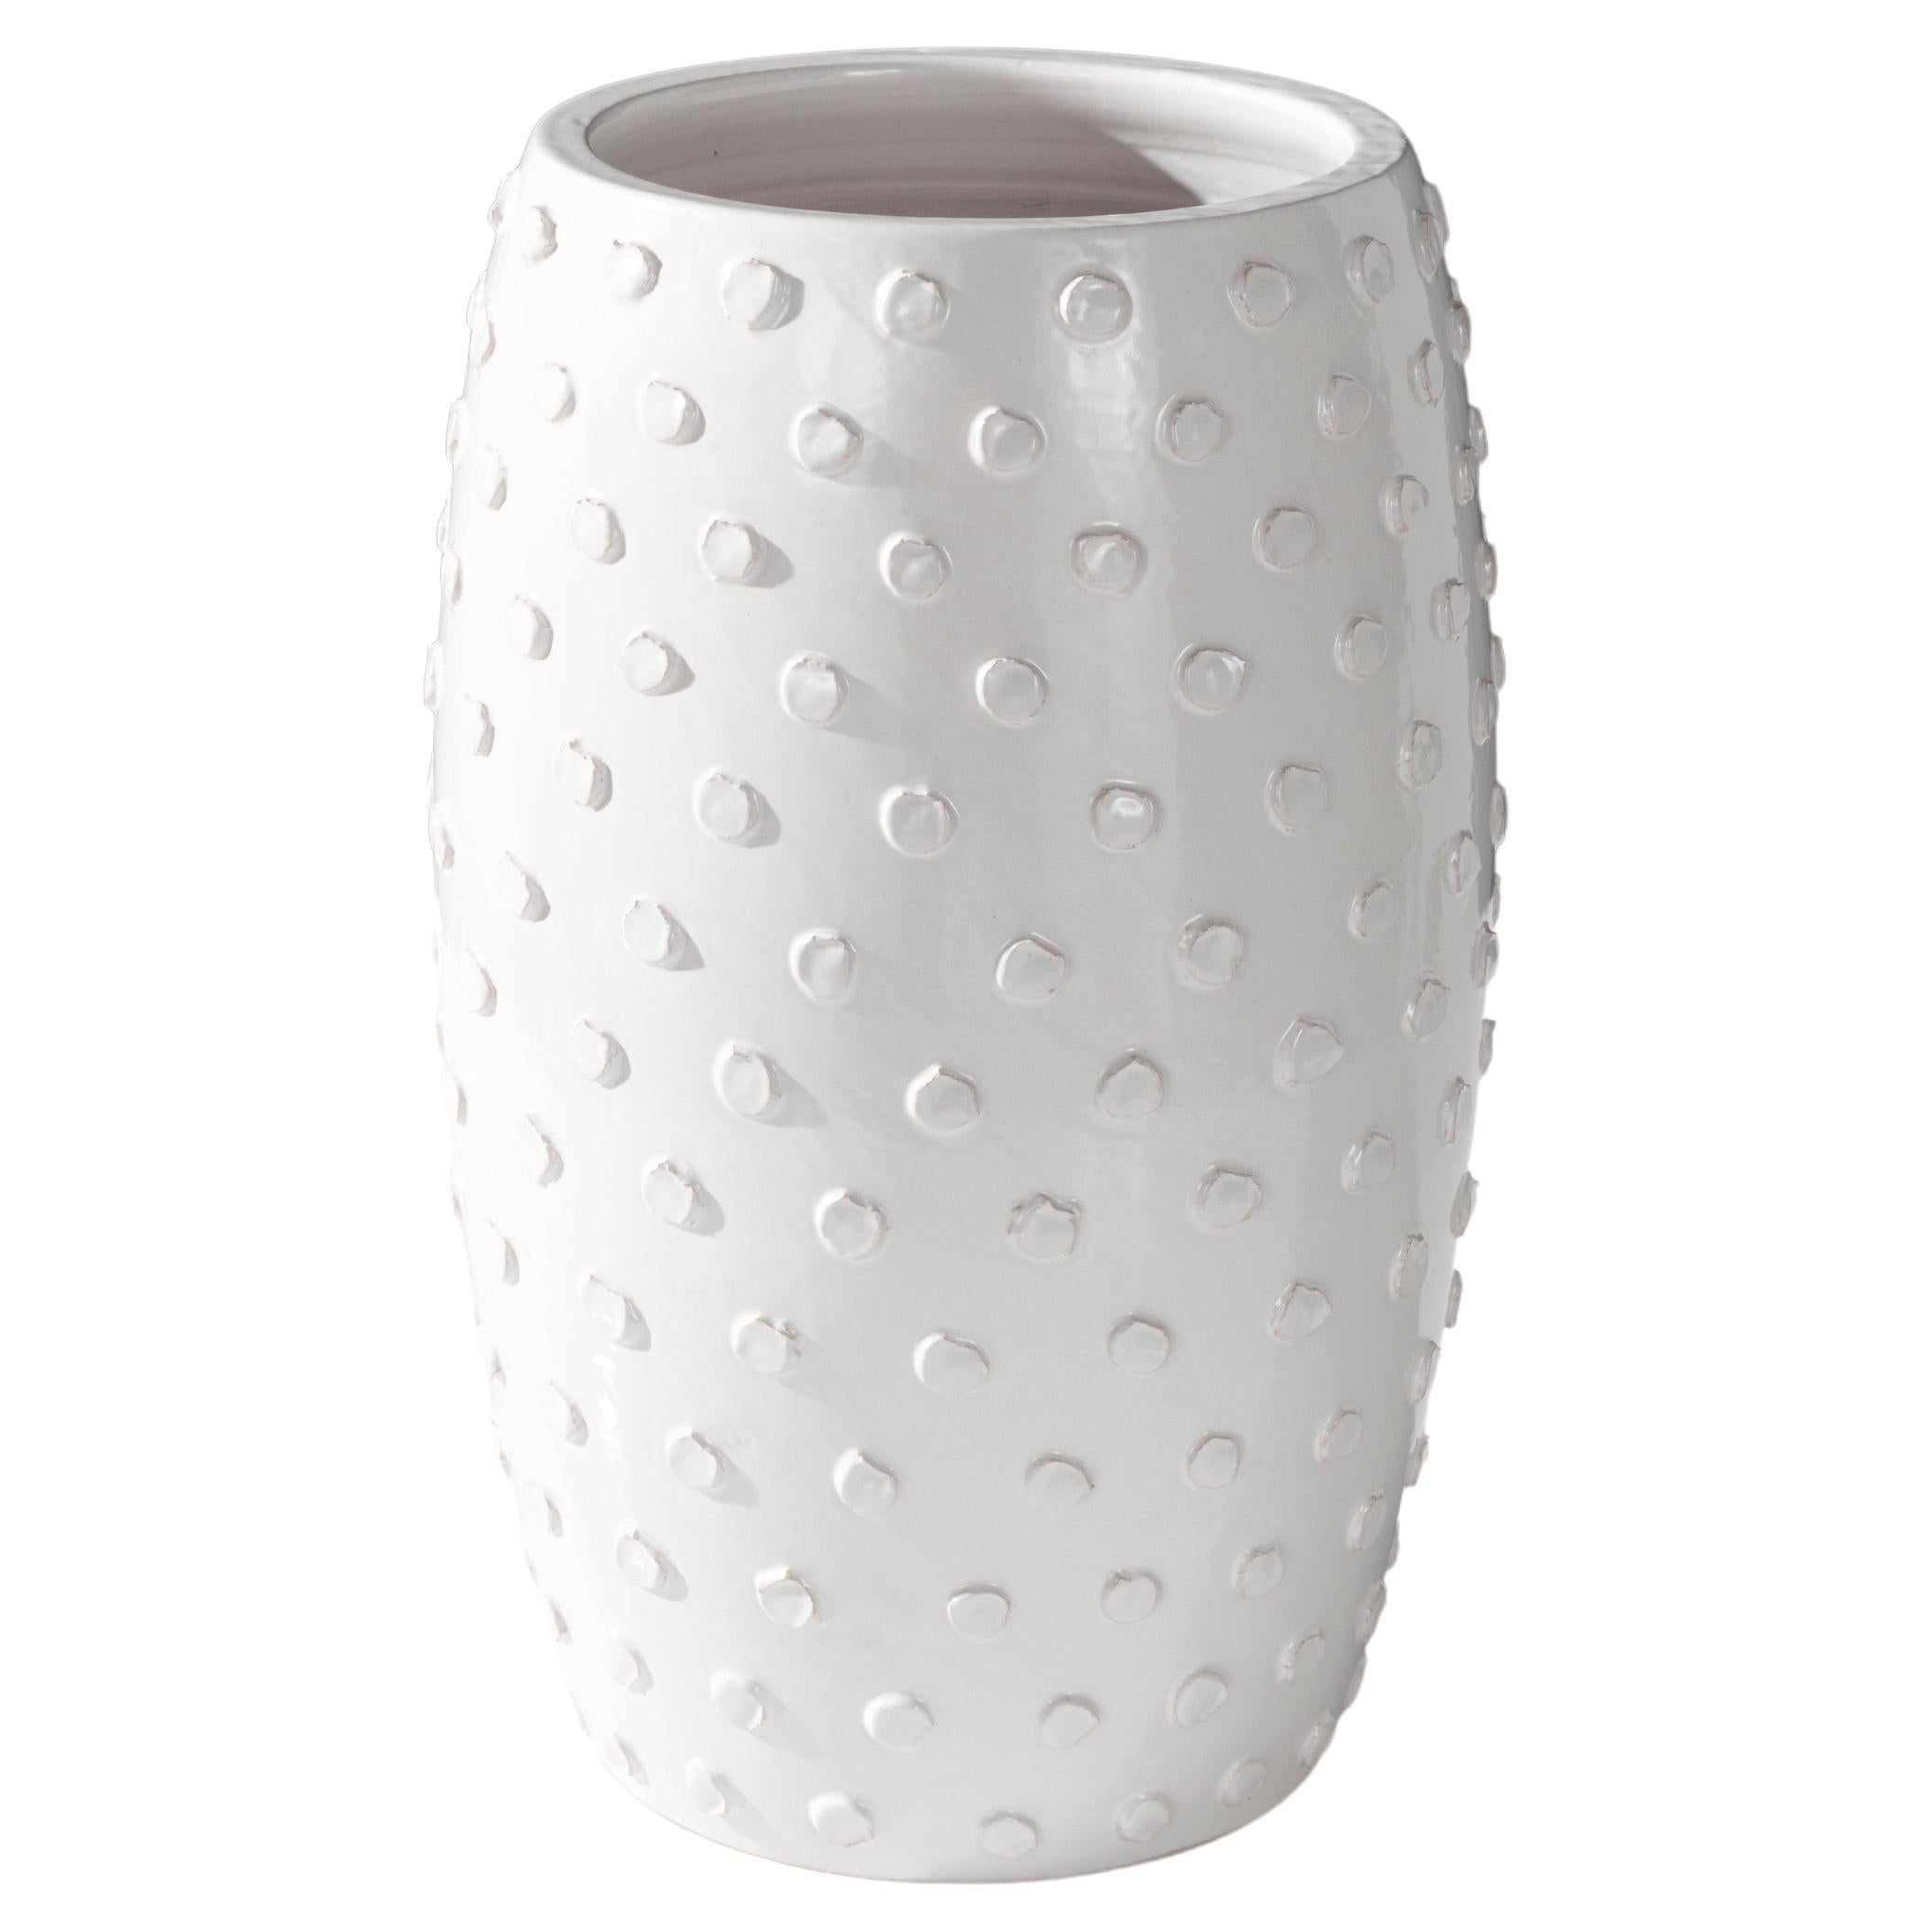 Nouveau vase Reng, Boru, en terre cuite émaillée blanc cassé avec motif de points